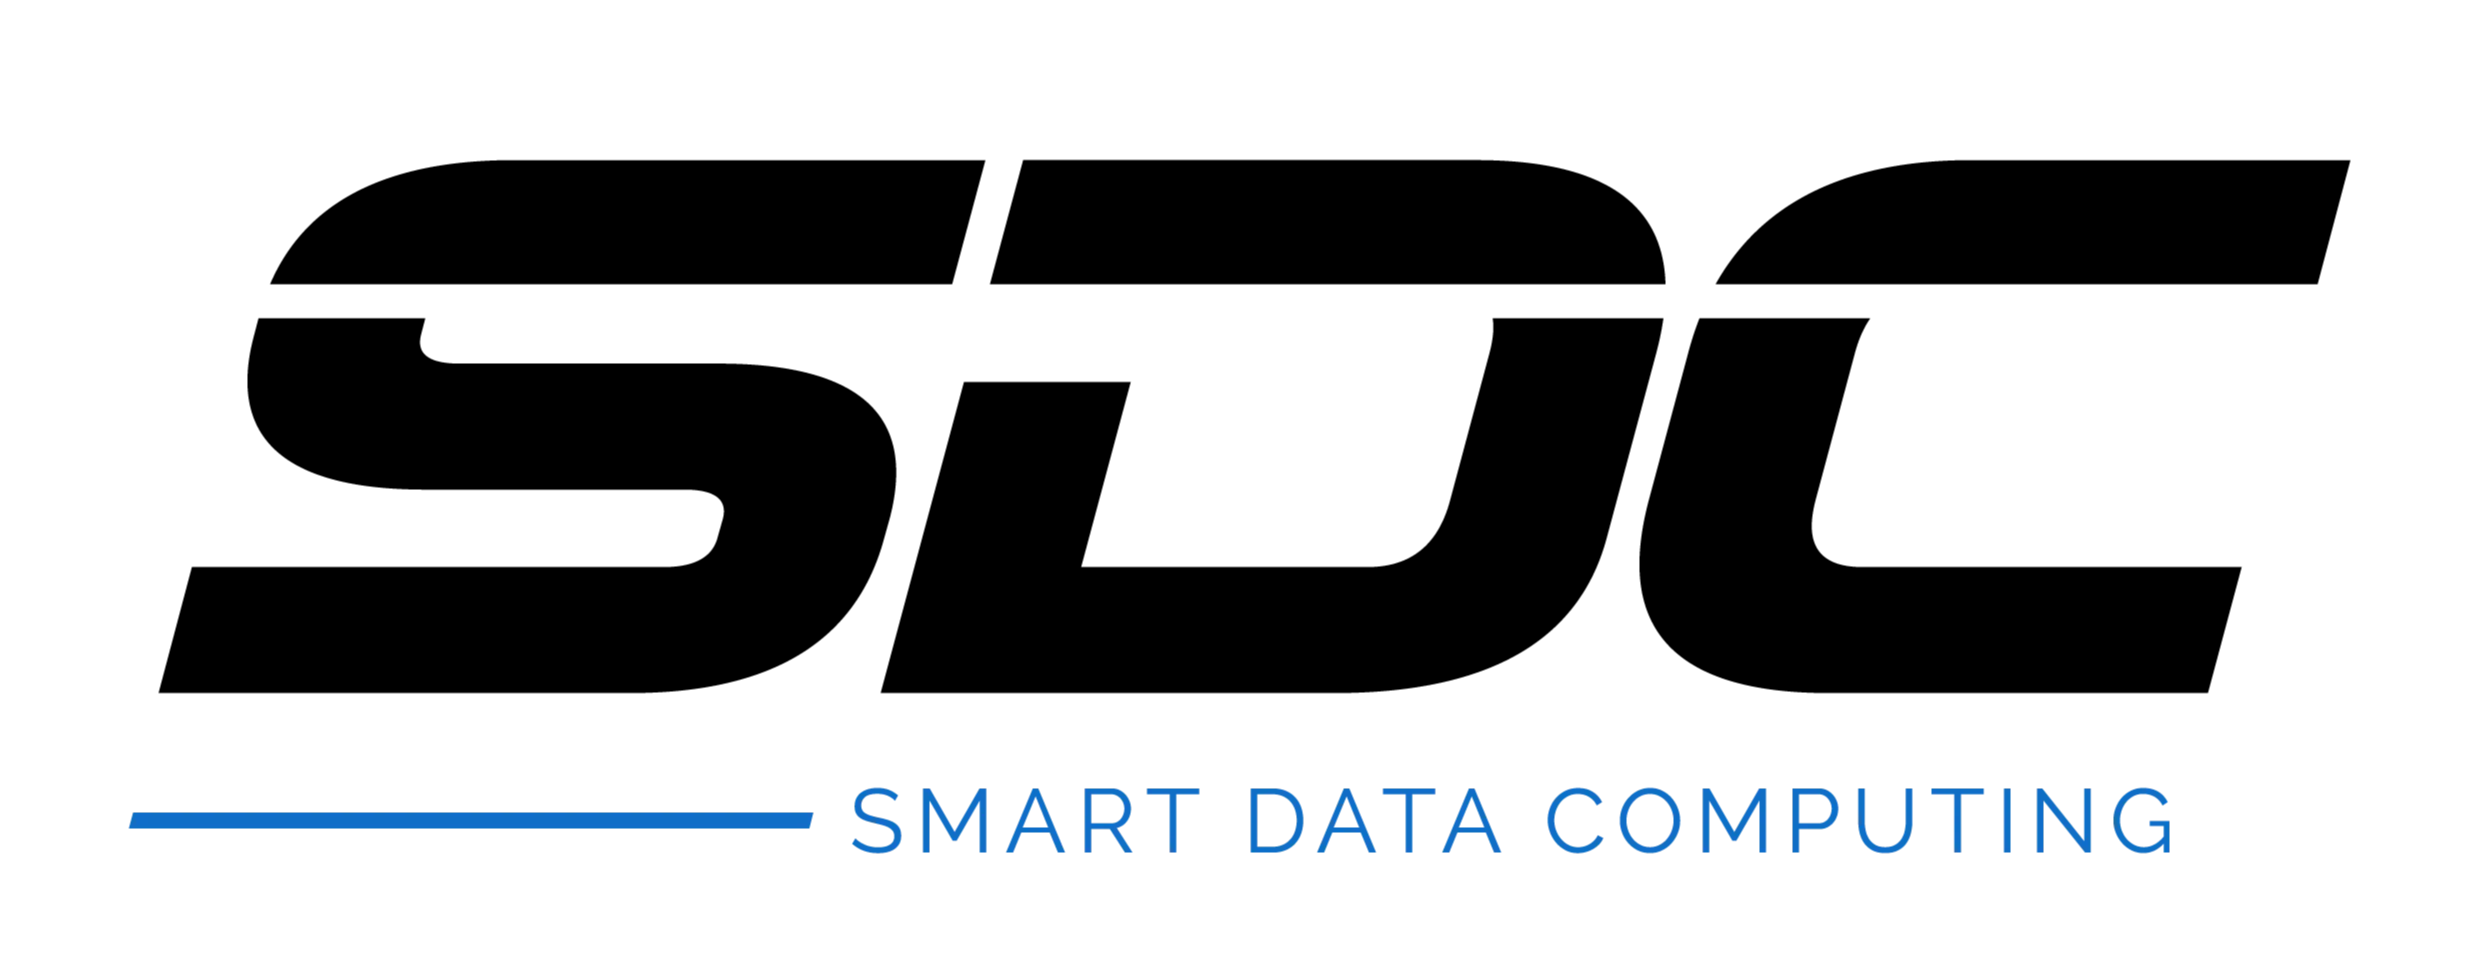 Logotipo contendo a sigla da empresa, SDC, na cor preta. Abaixo da letra "S" uma linha em azul e em seguida está escrito "Smart Data Computing" na mesma cor azul.